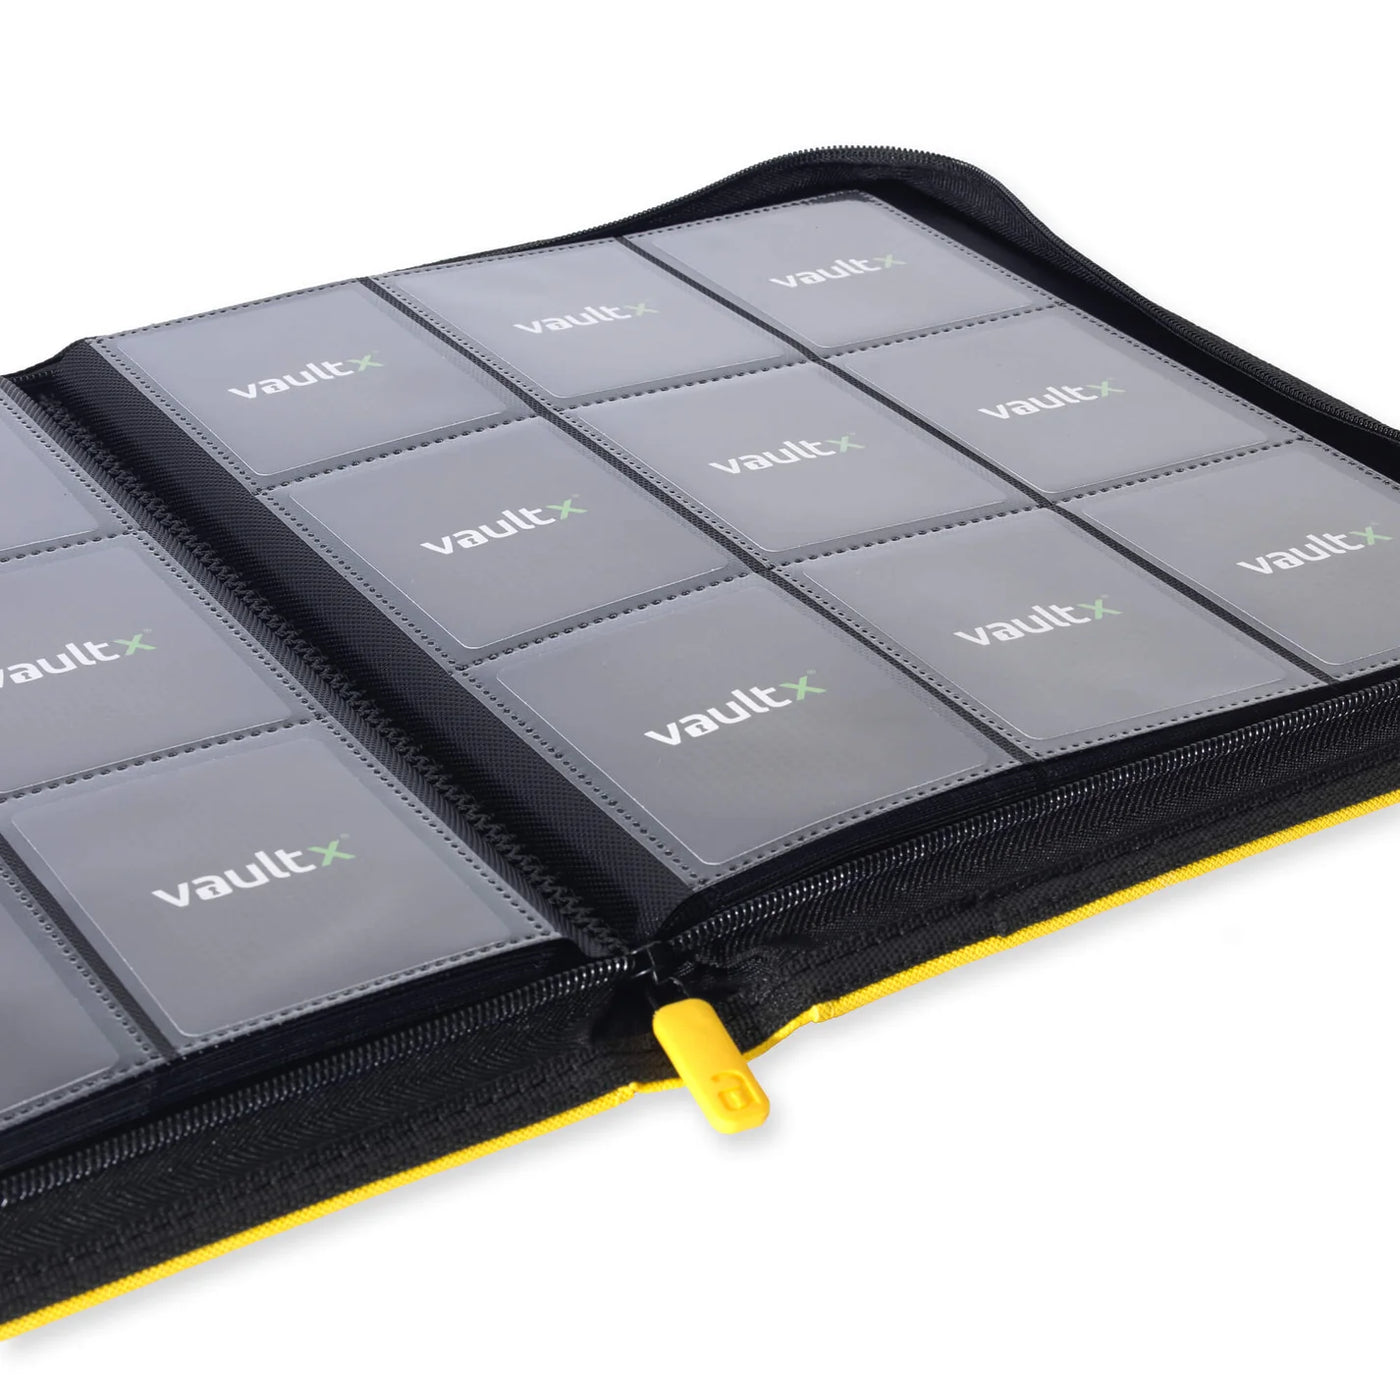 Vault X Exo-Tec Zip Binder 9-Pocket Yellow